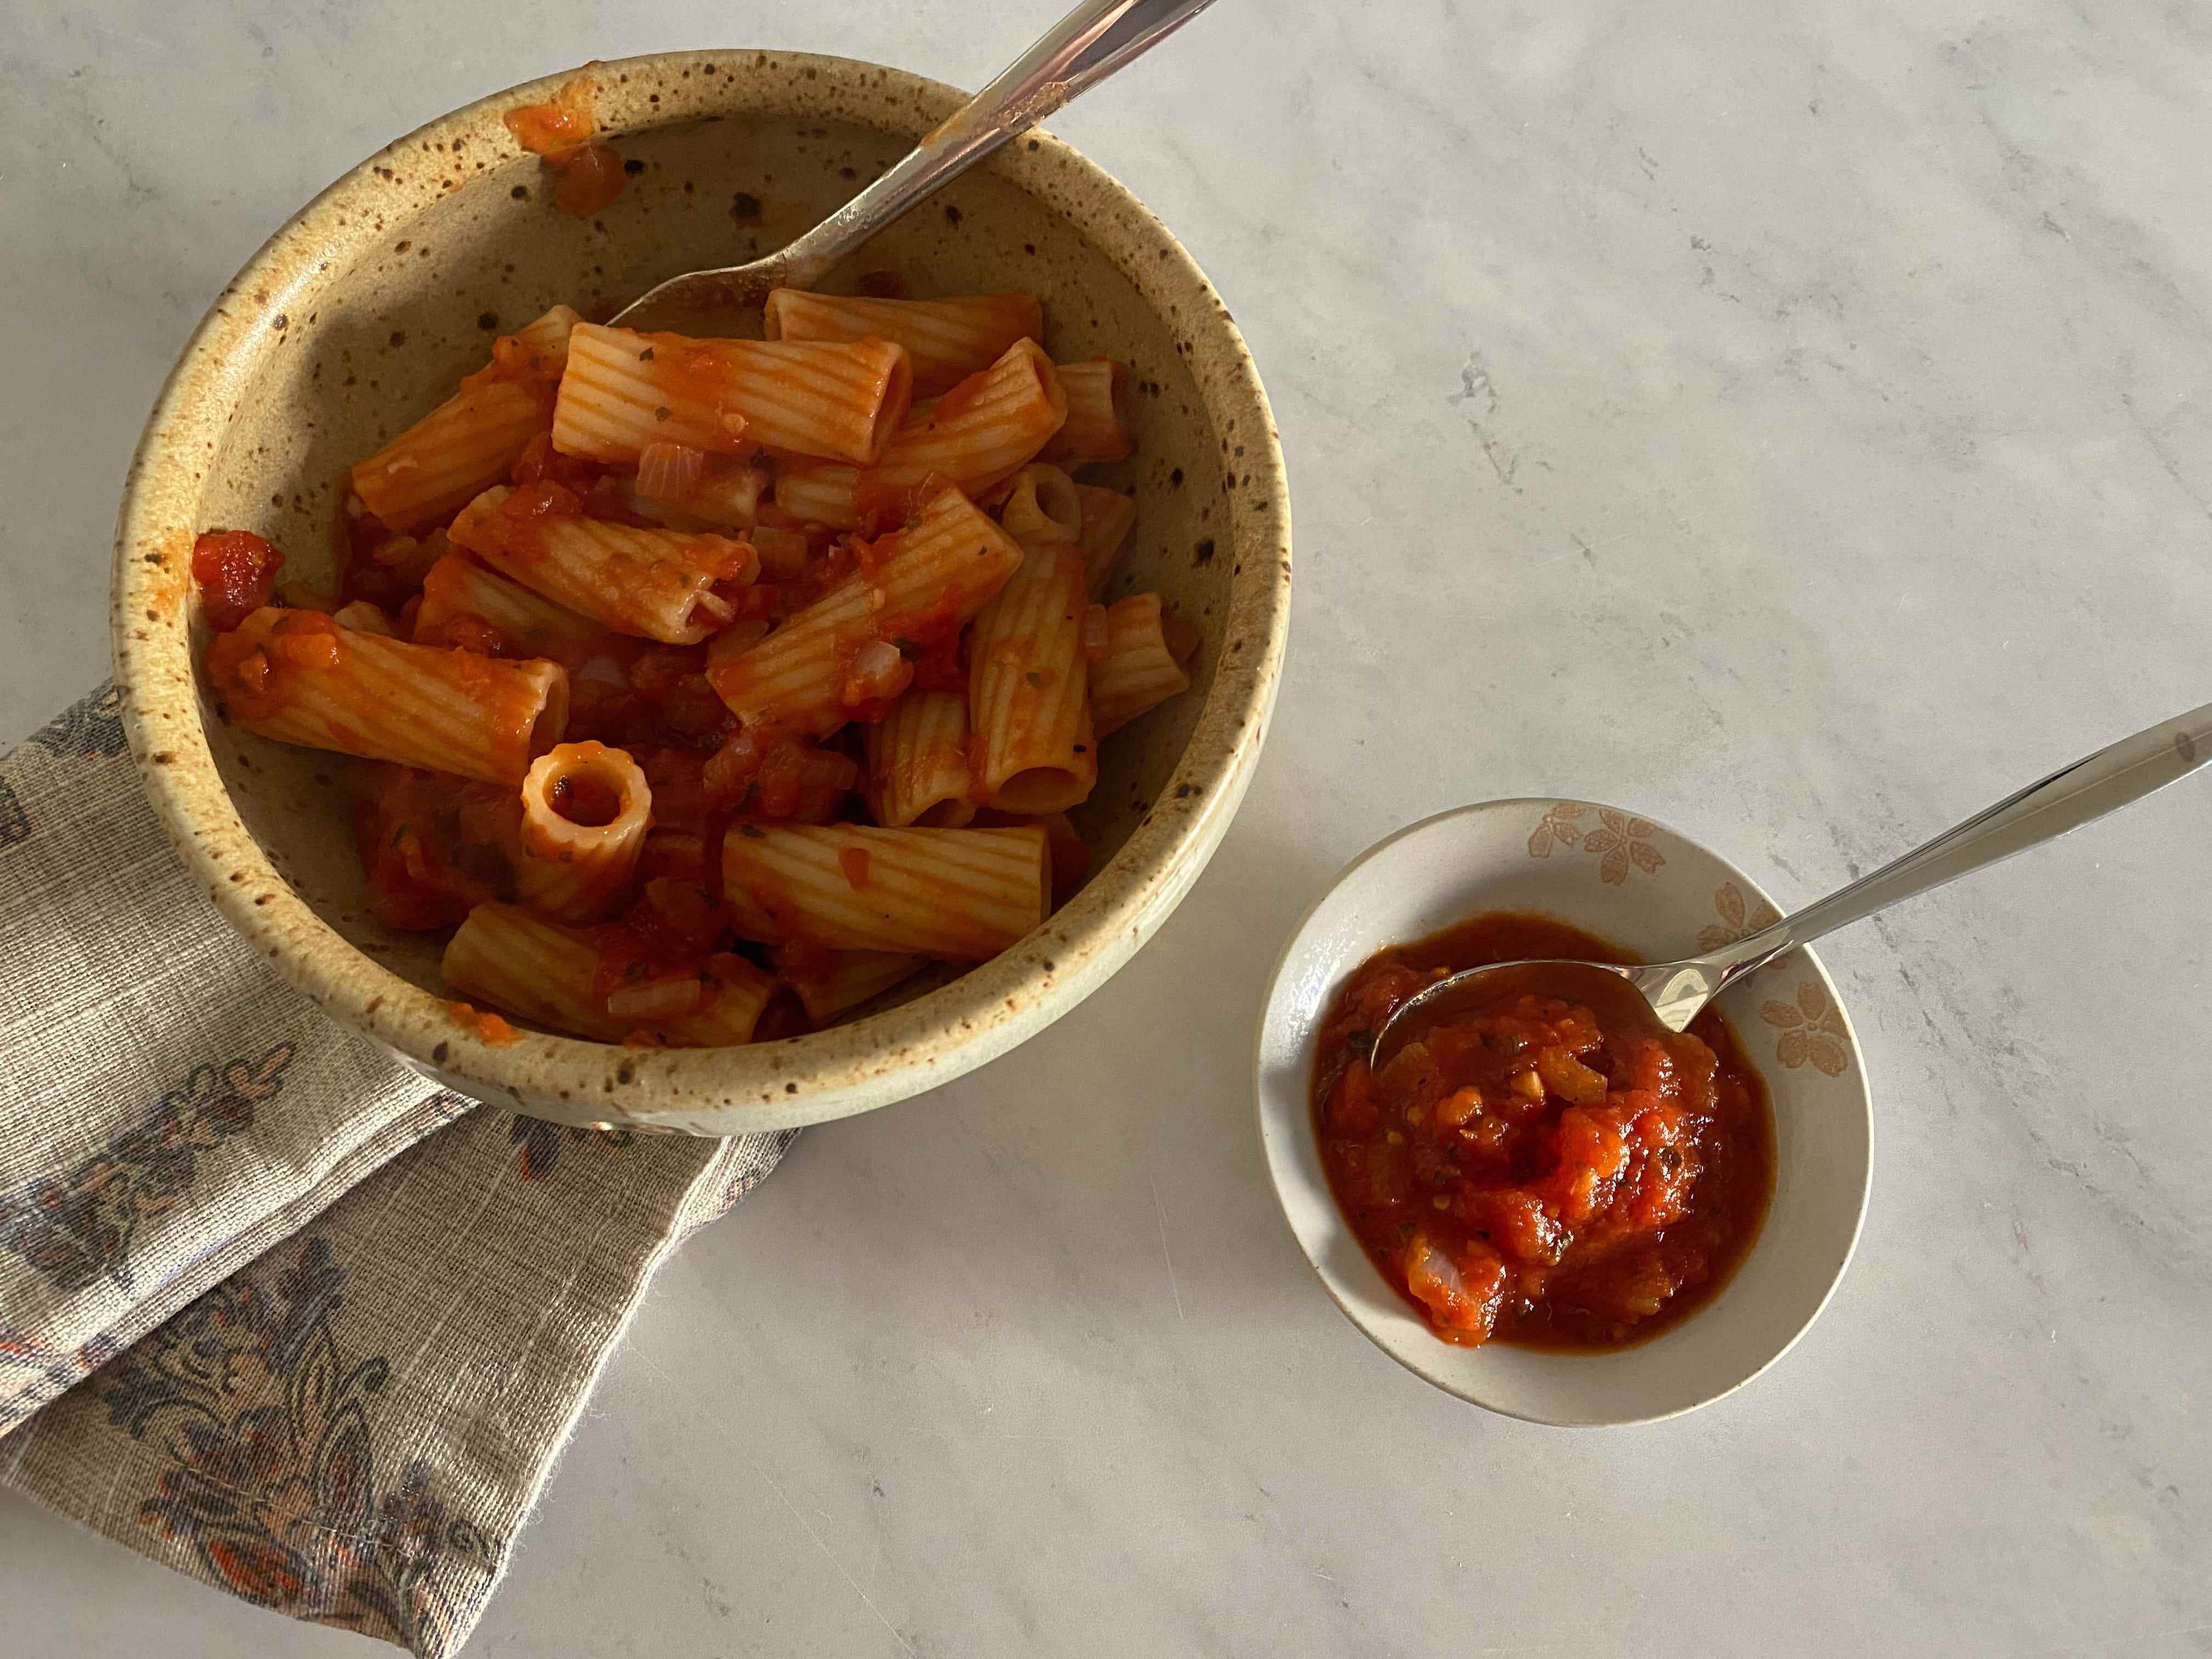 Pasta mit Marinara-Sauce durch eine kleinere Schüssel mit einer klobigen Marinara-Sauce